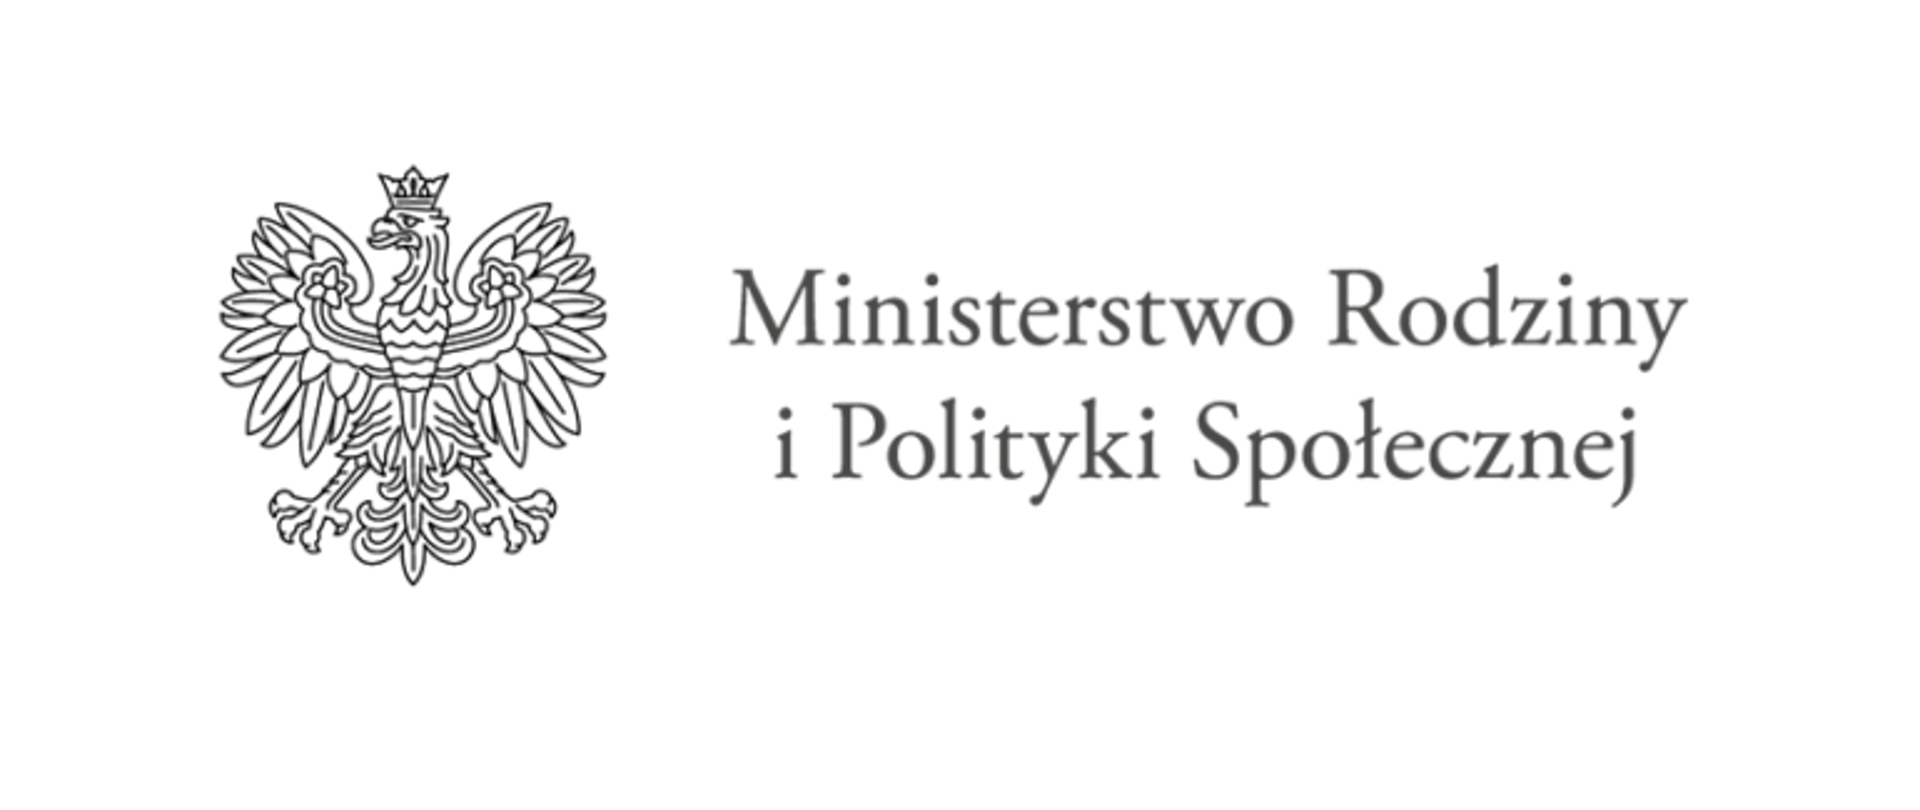 Logotyp Ministerstwa Rodziny i Polityki Spolecznej